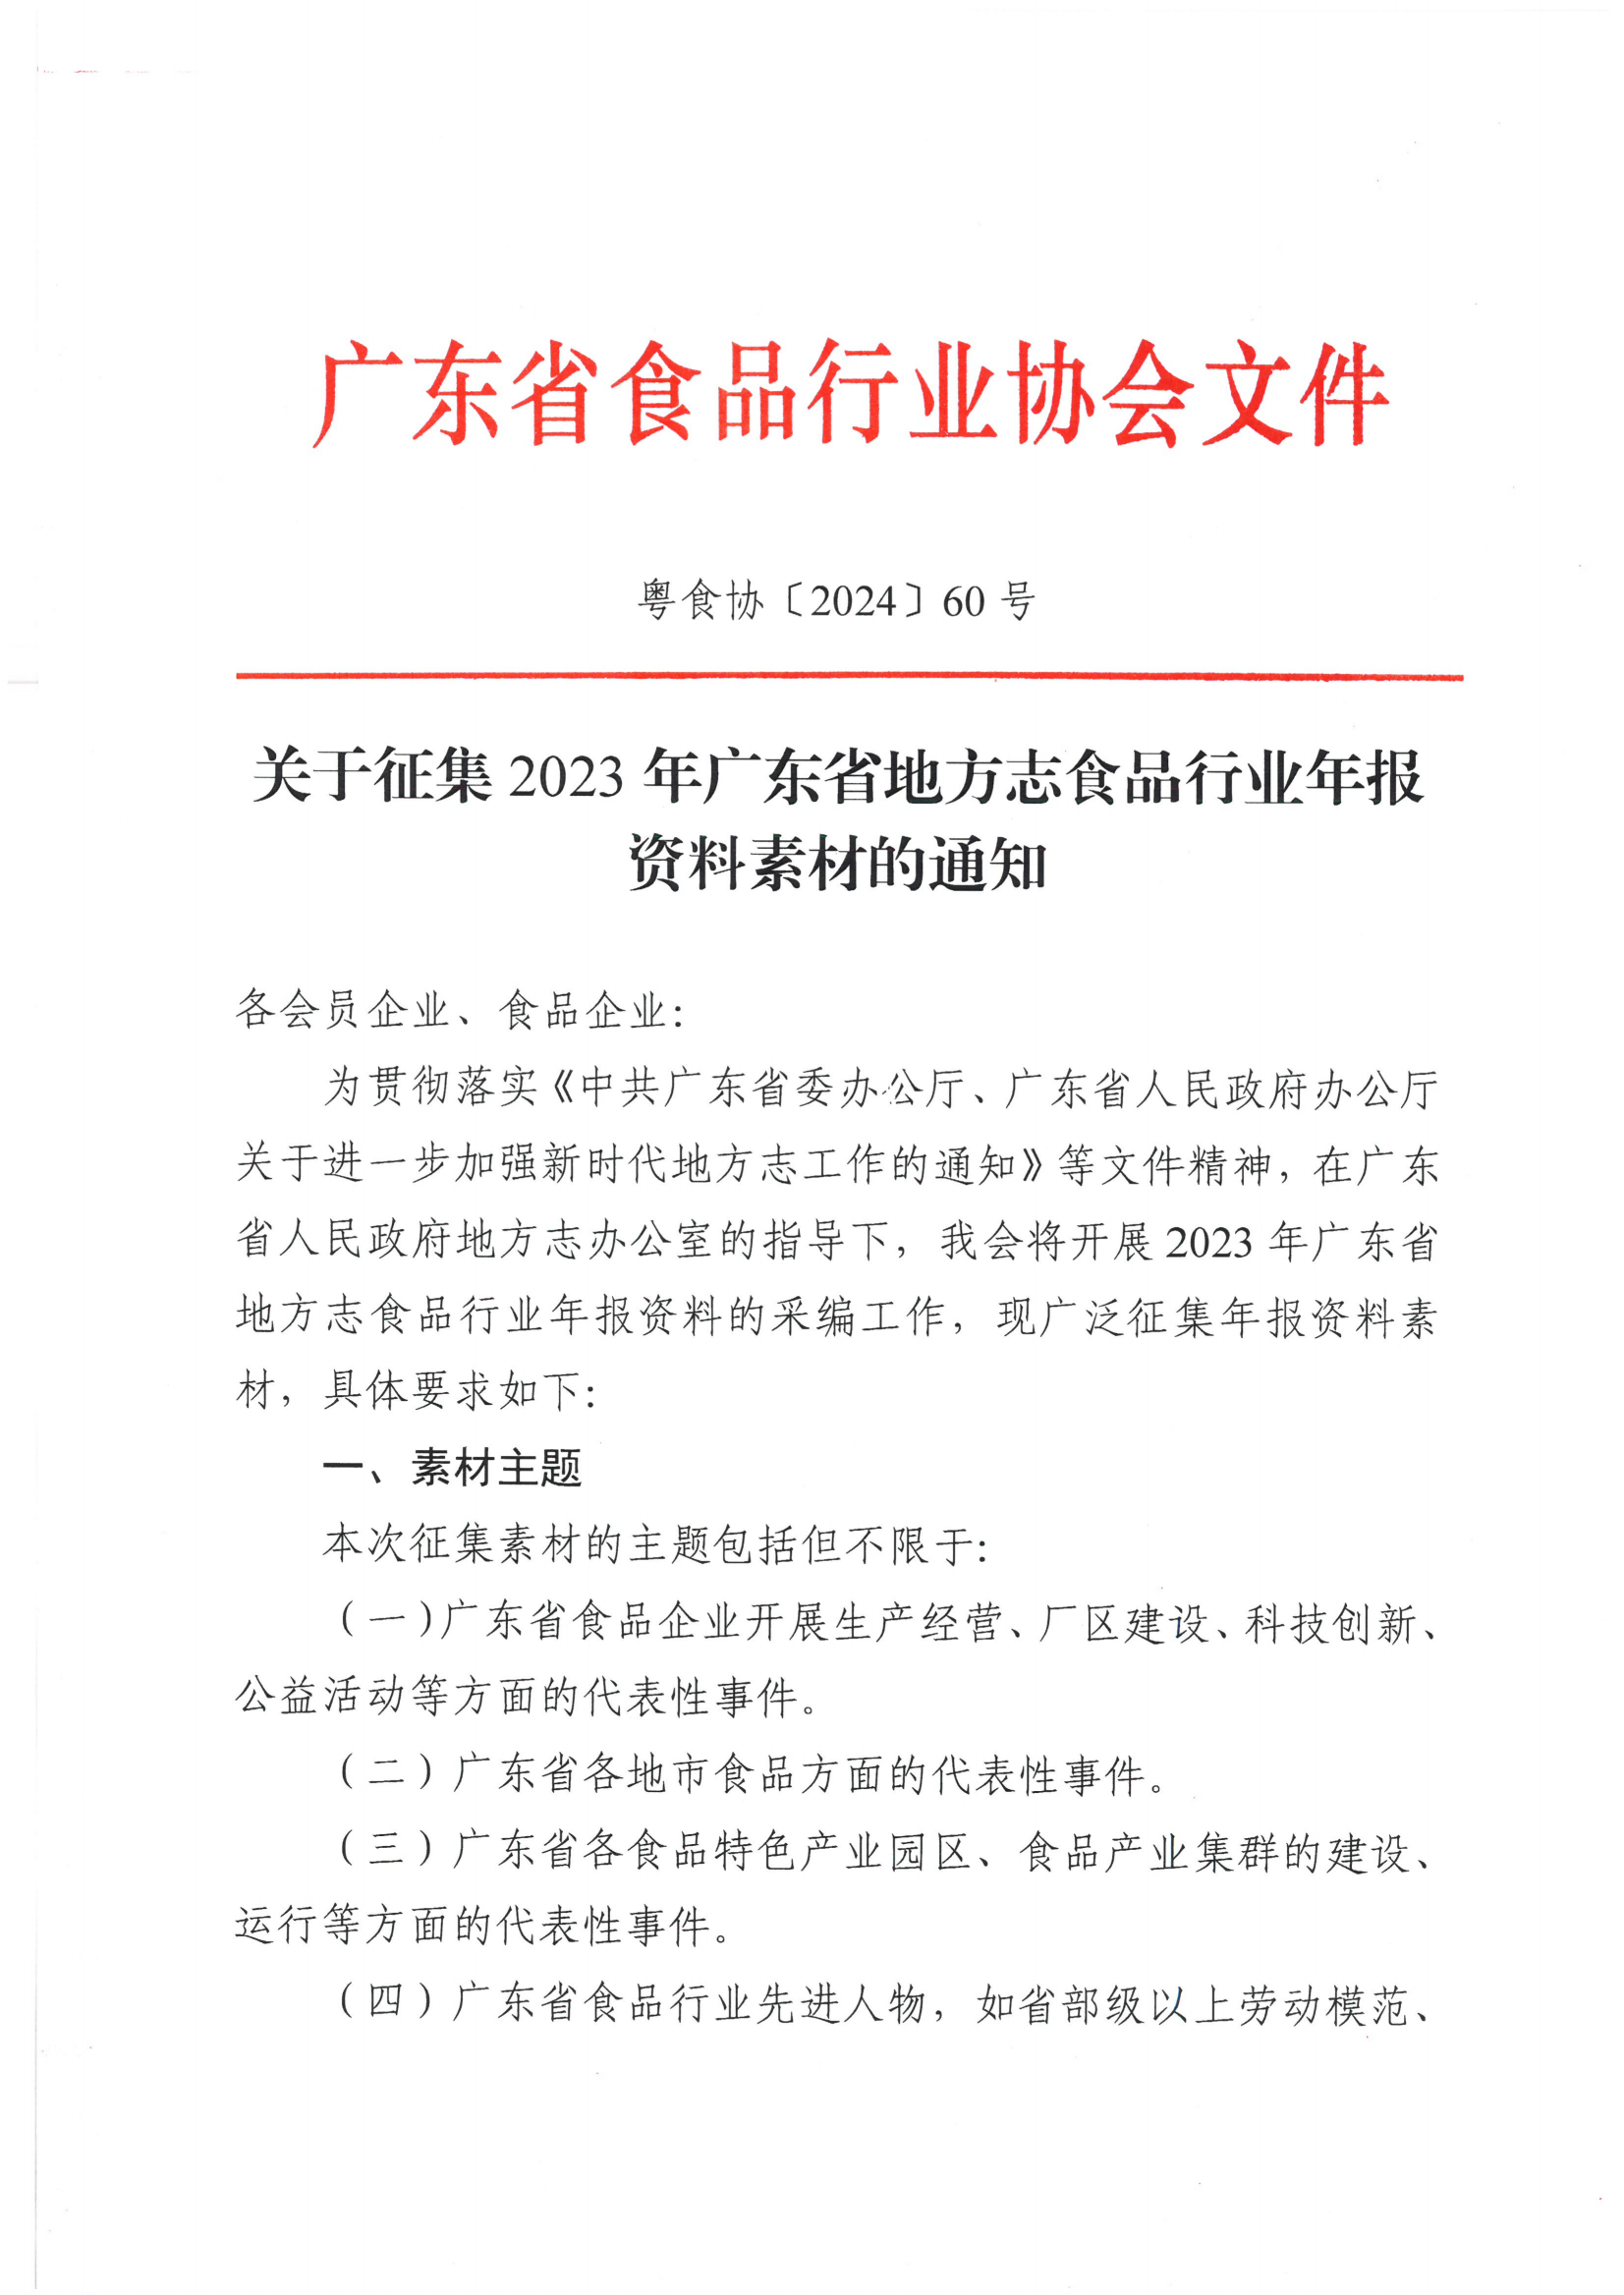 关于征集2023年广东省地方志食品行业年报资料素材的通知